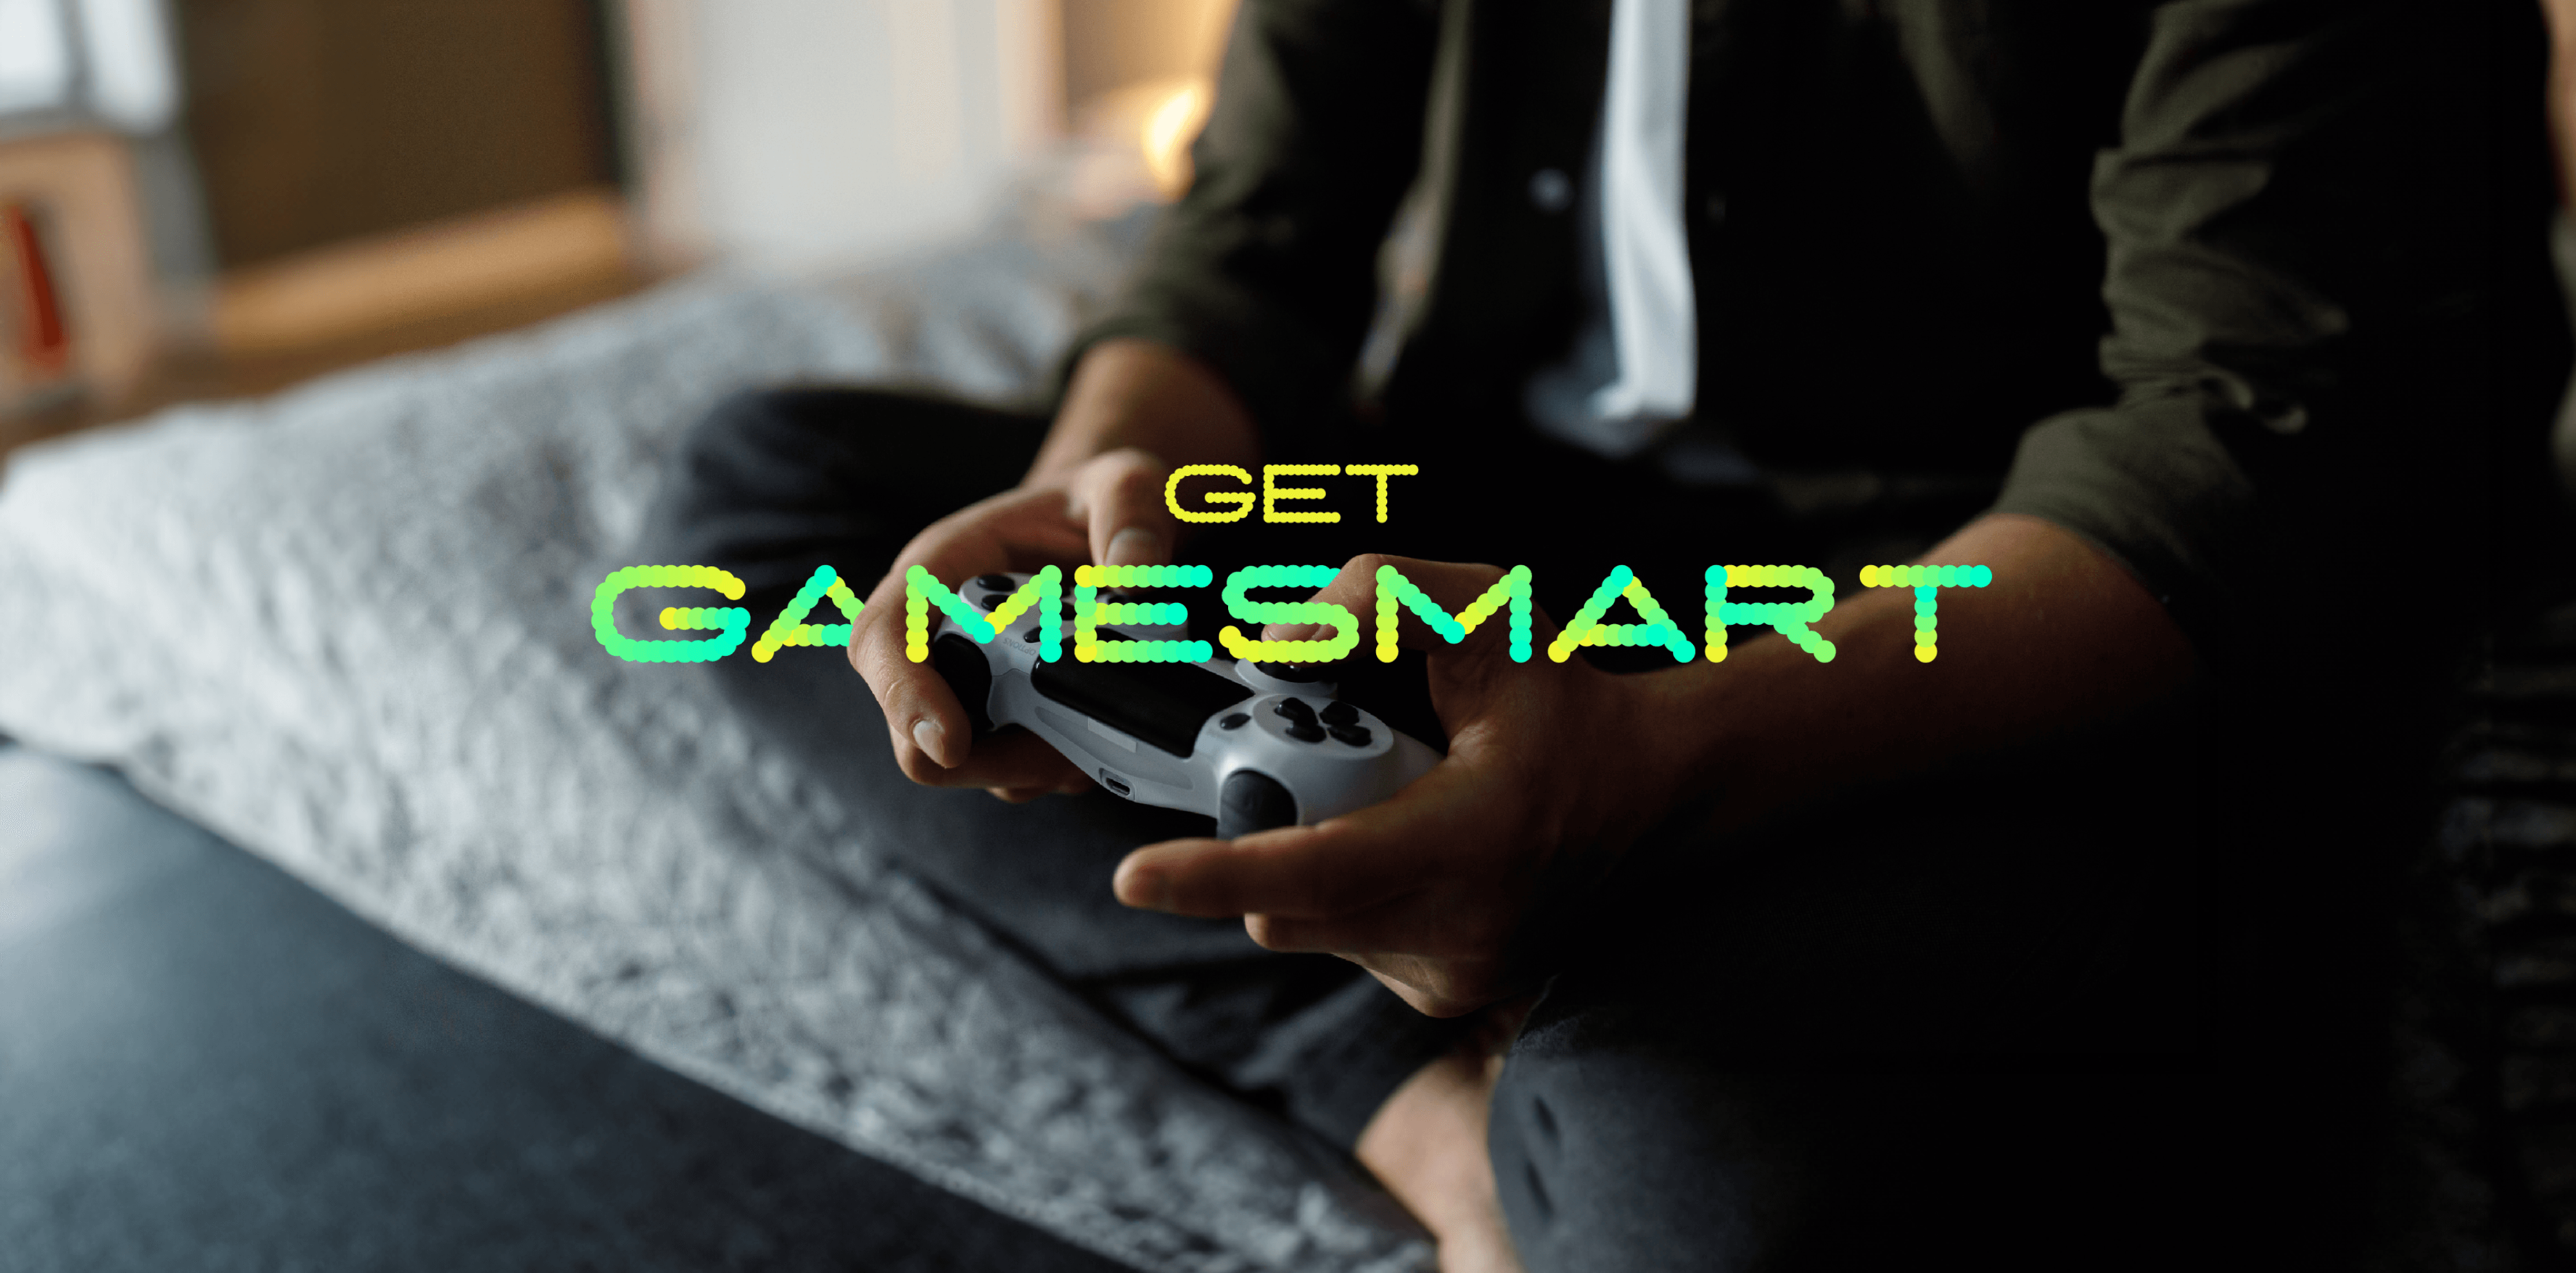 Get GameSmart